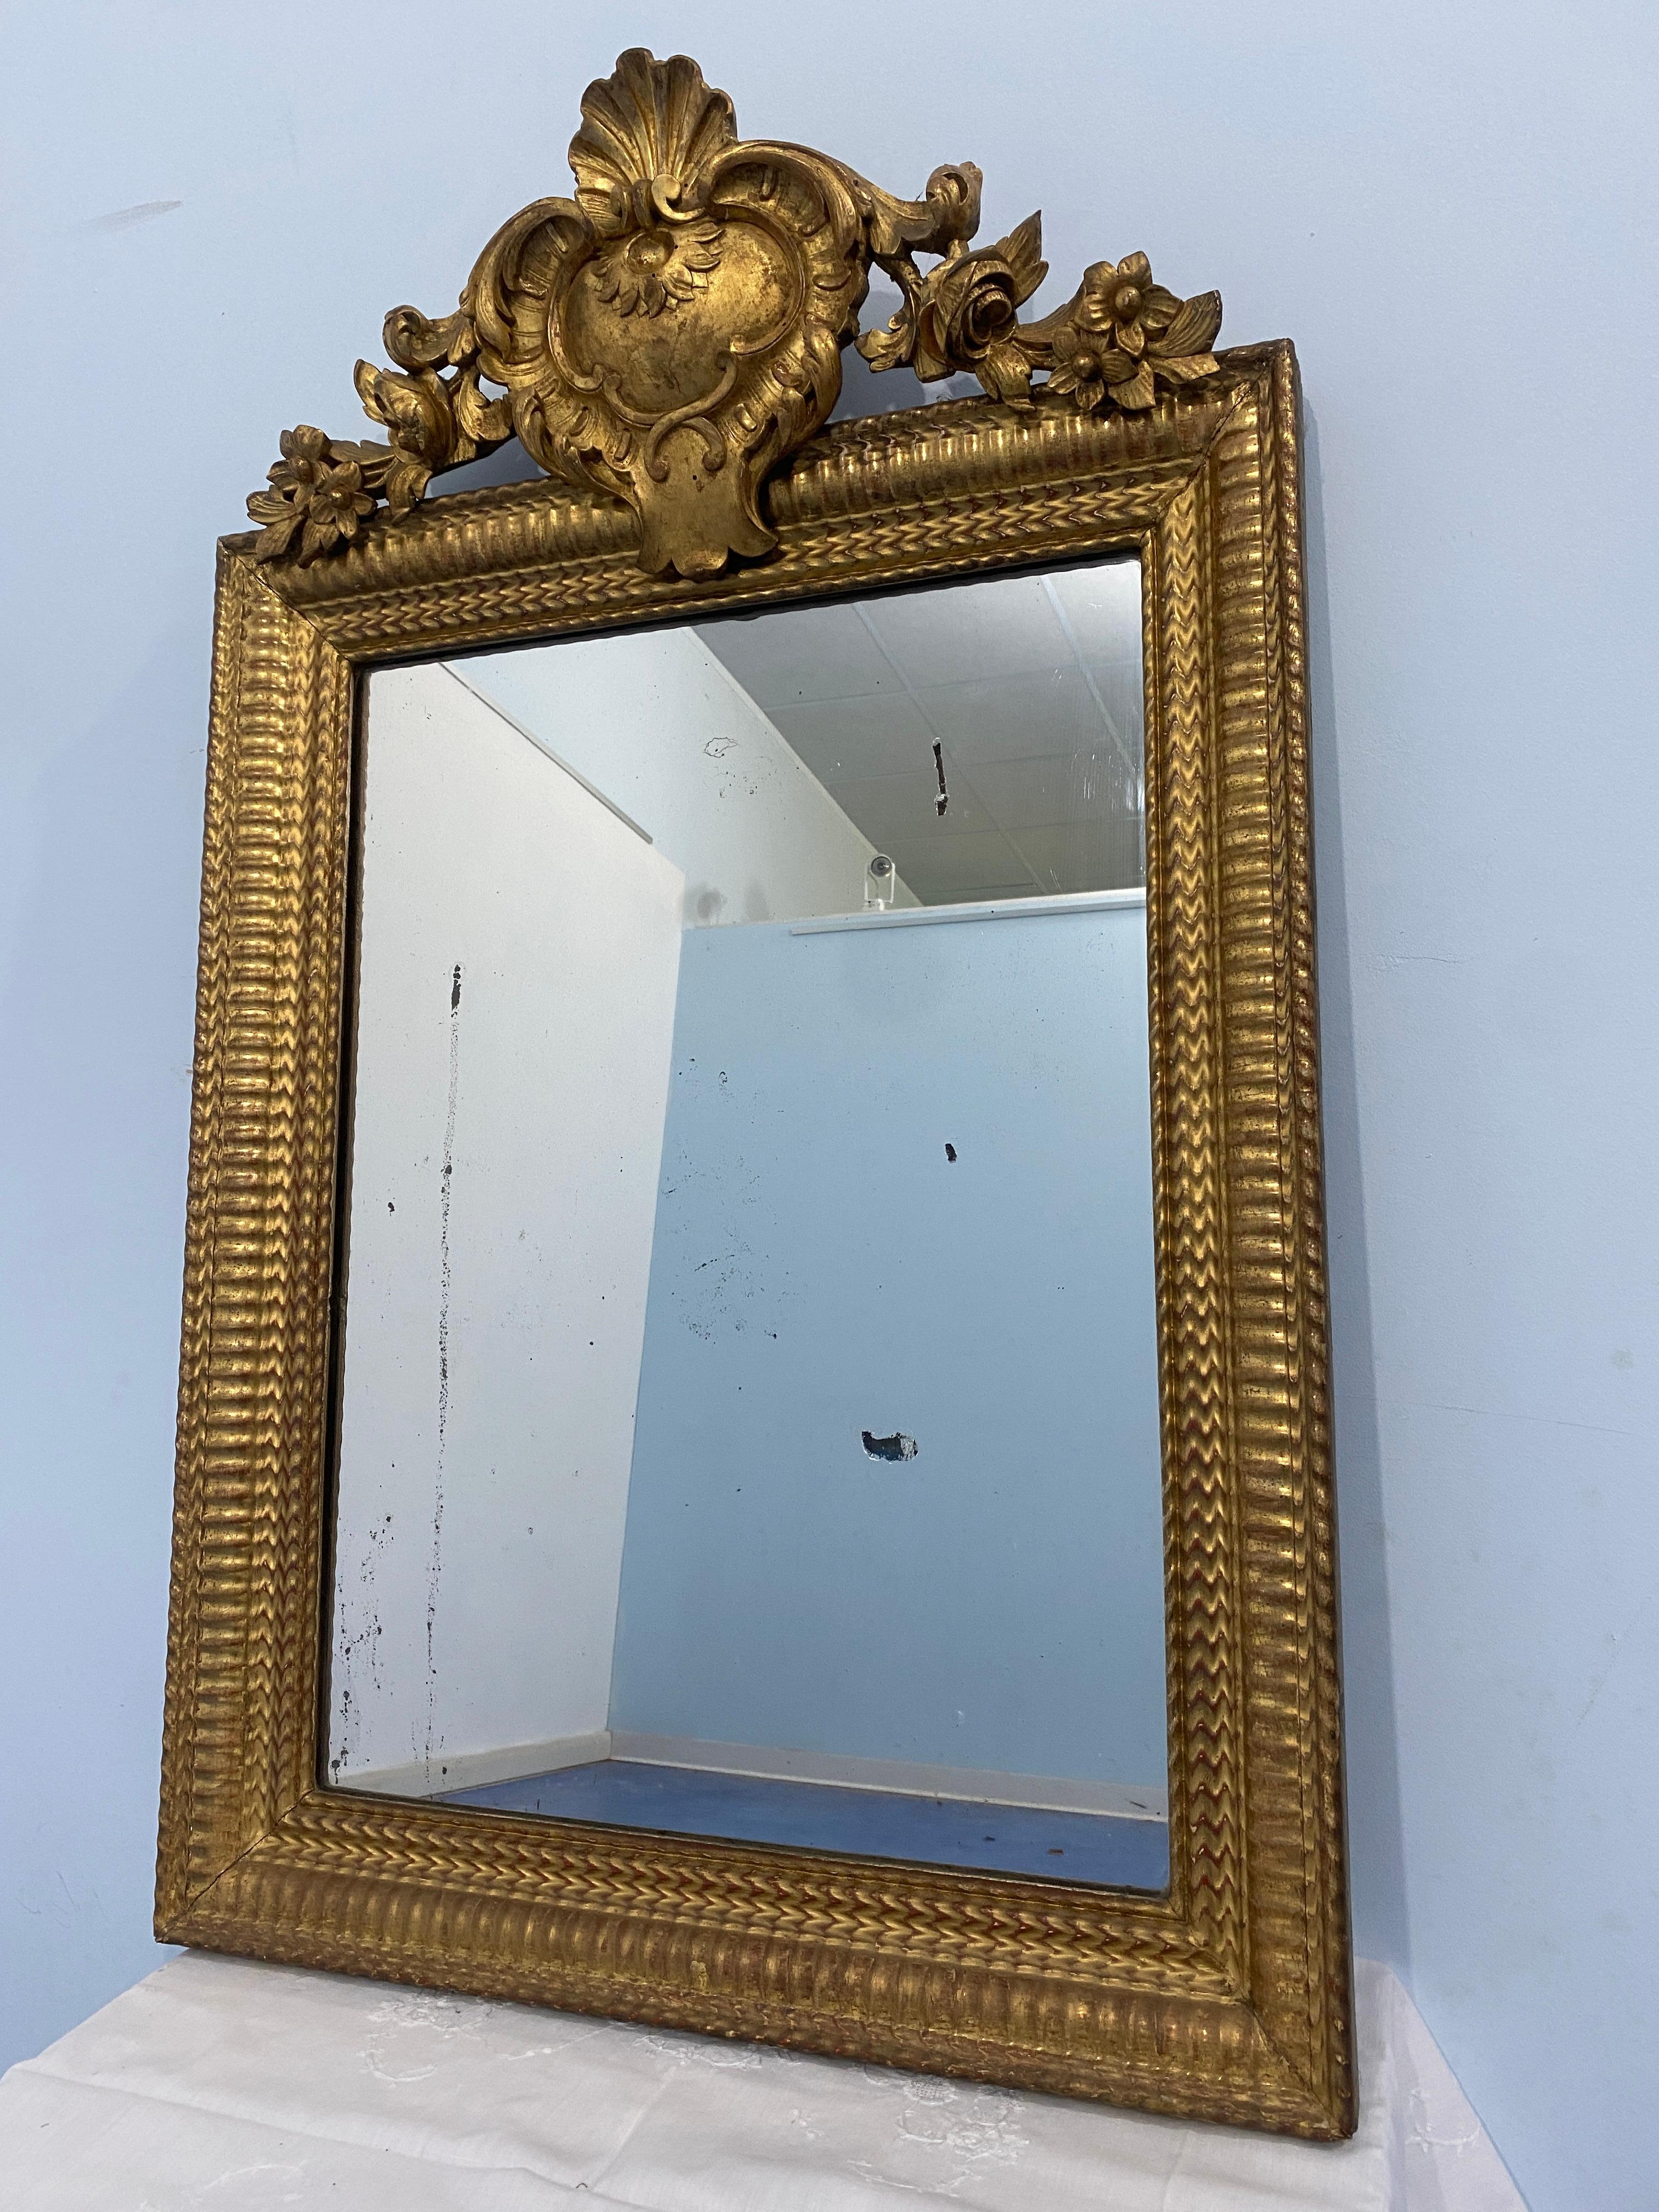 Miroir français ancien d'époque Louis Philippe, doré à la feuille d'or. Le dessin du cadre sur la face avant est très décoratif et original, de même que la splendide corniche en bois sculpté avec des motifs floraux sur les côtés.
L'état est très bon